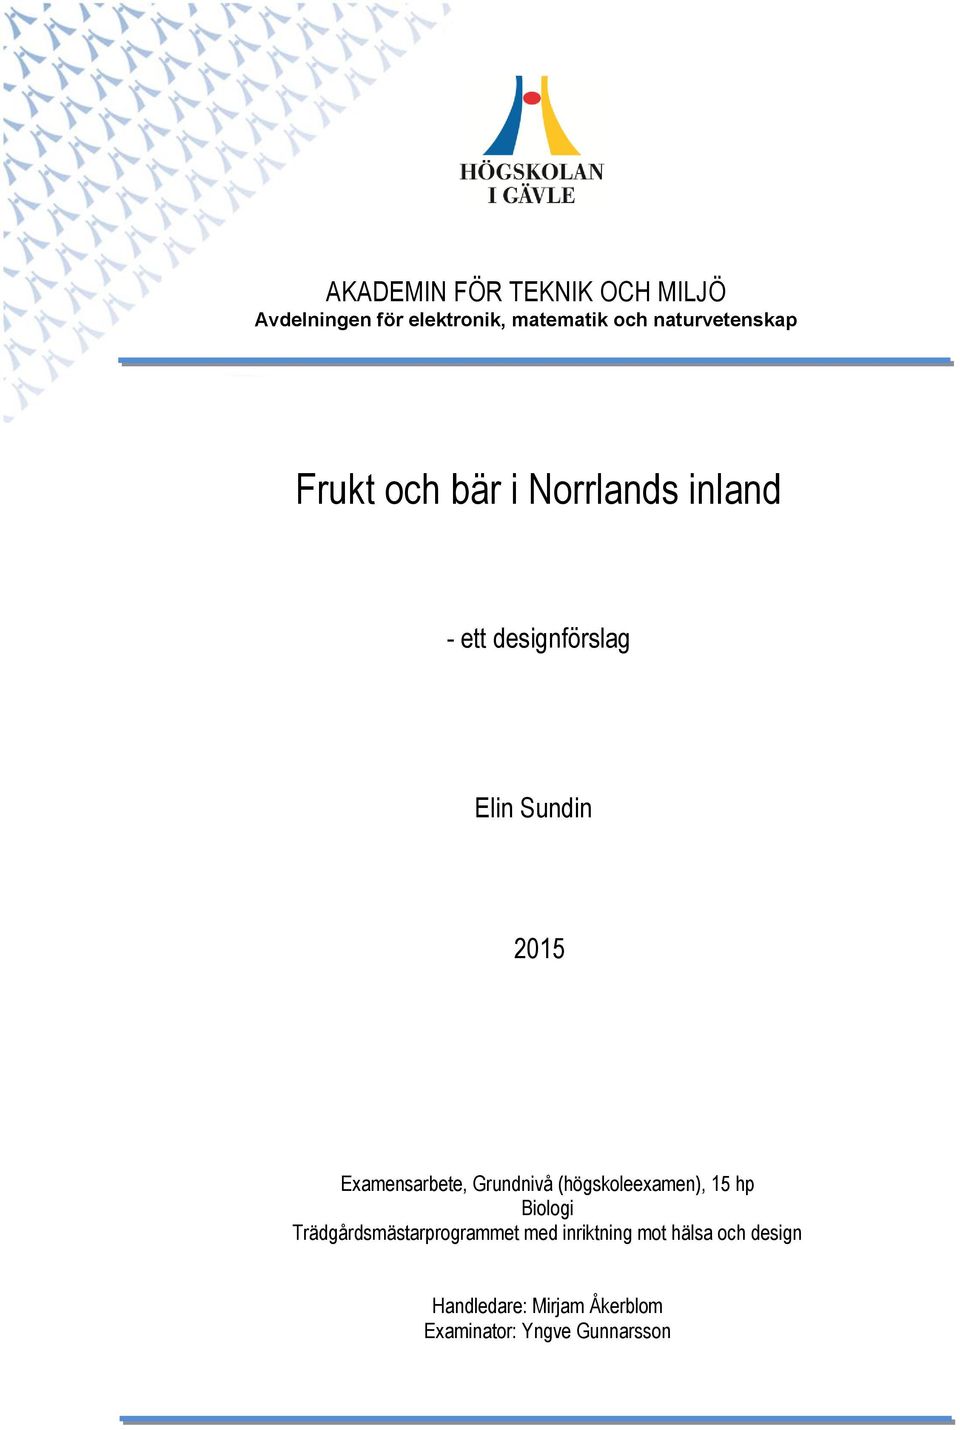 2015 Examensarbete, Grundnivå (högskoleexamen), 15 hp Biologi